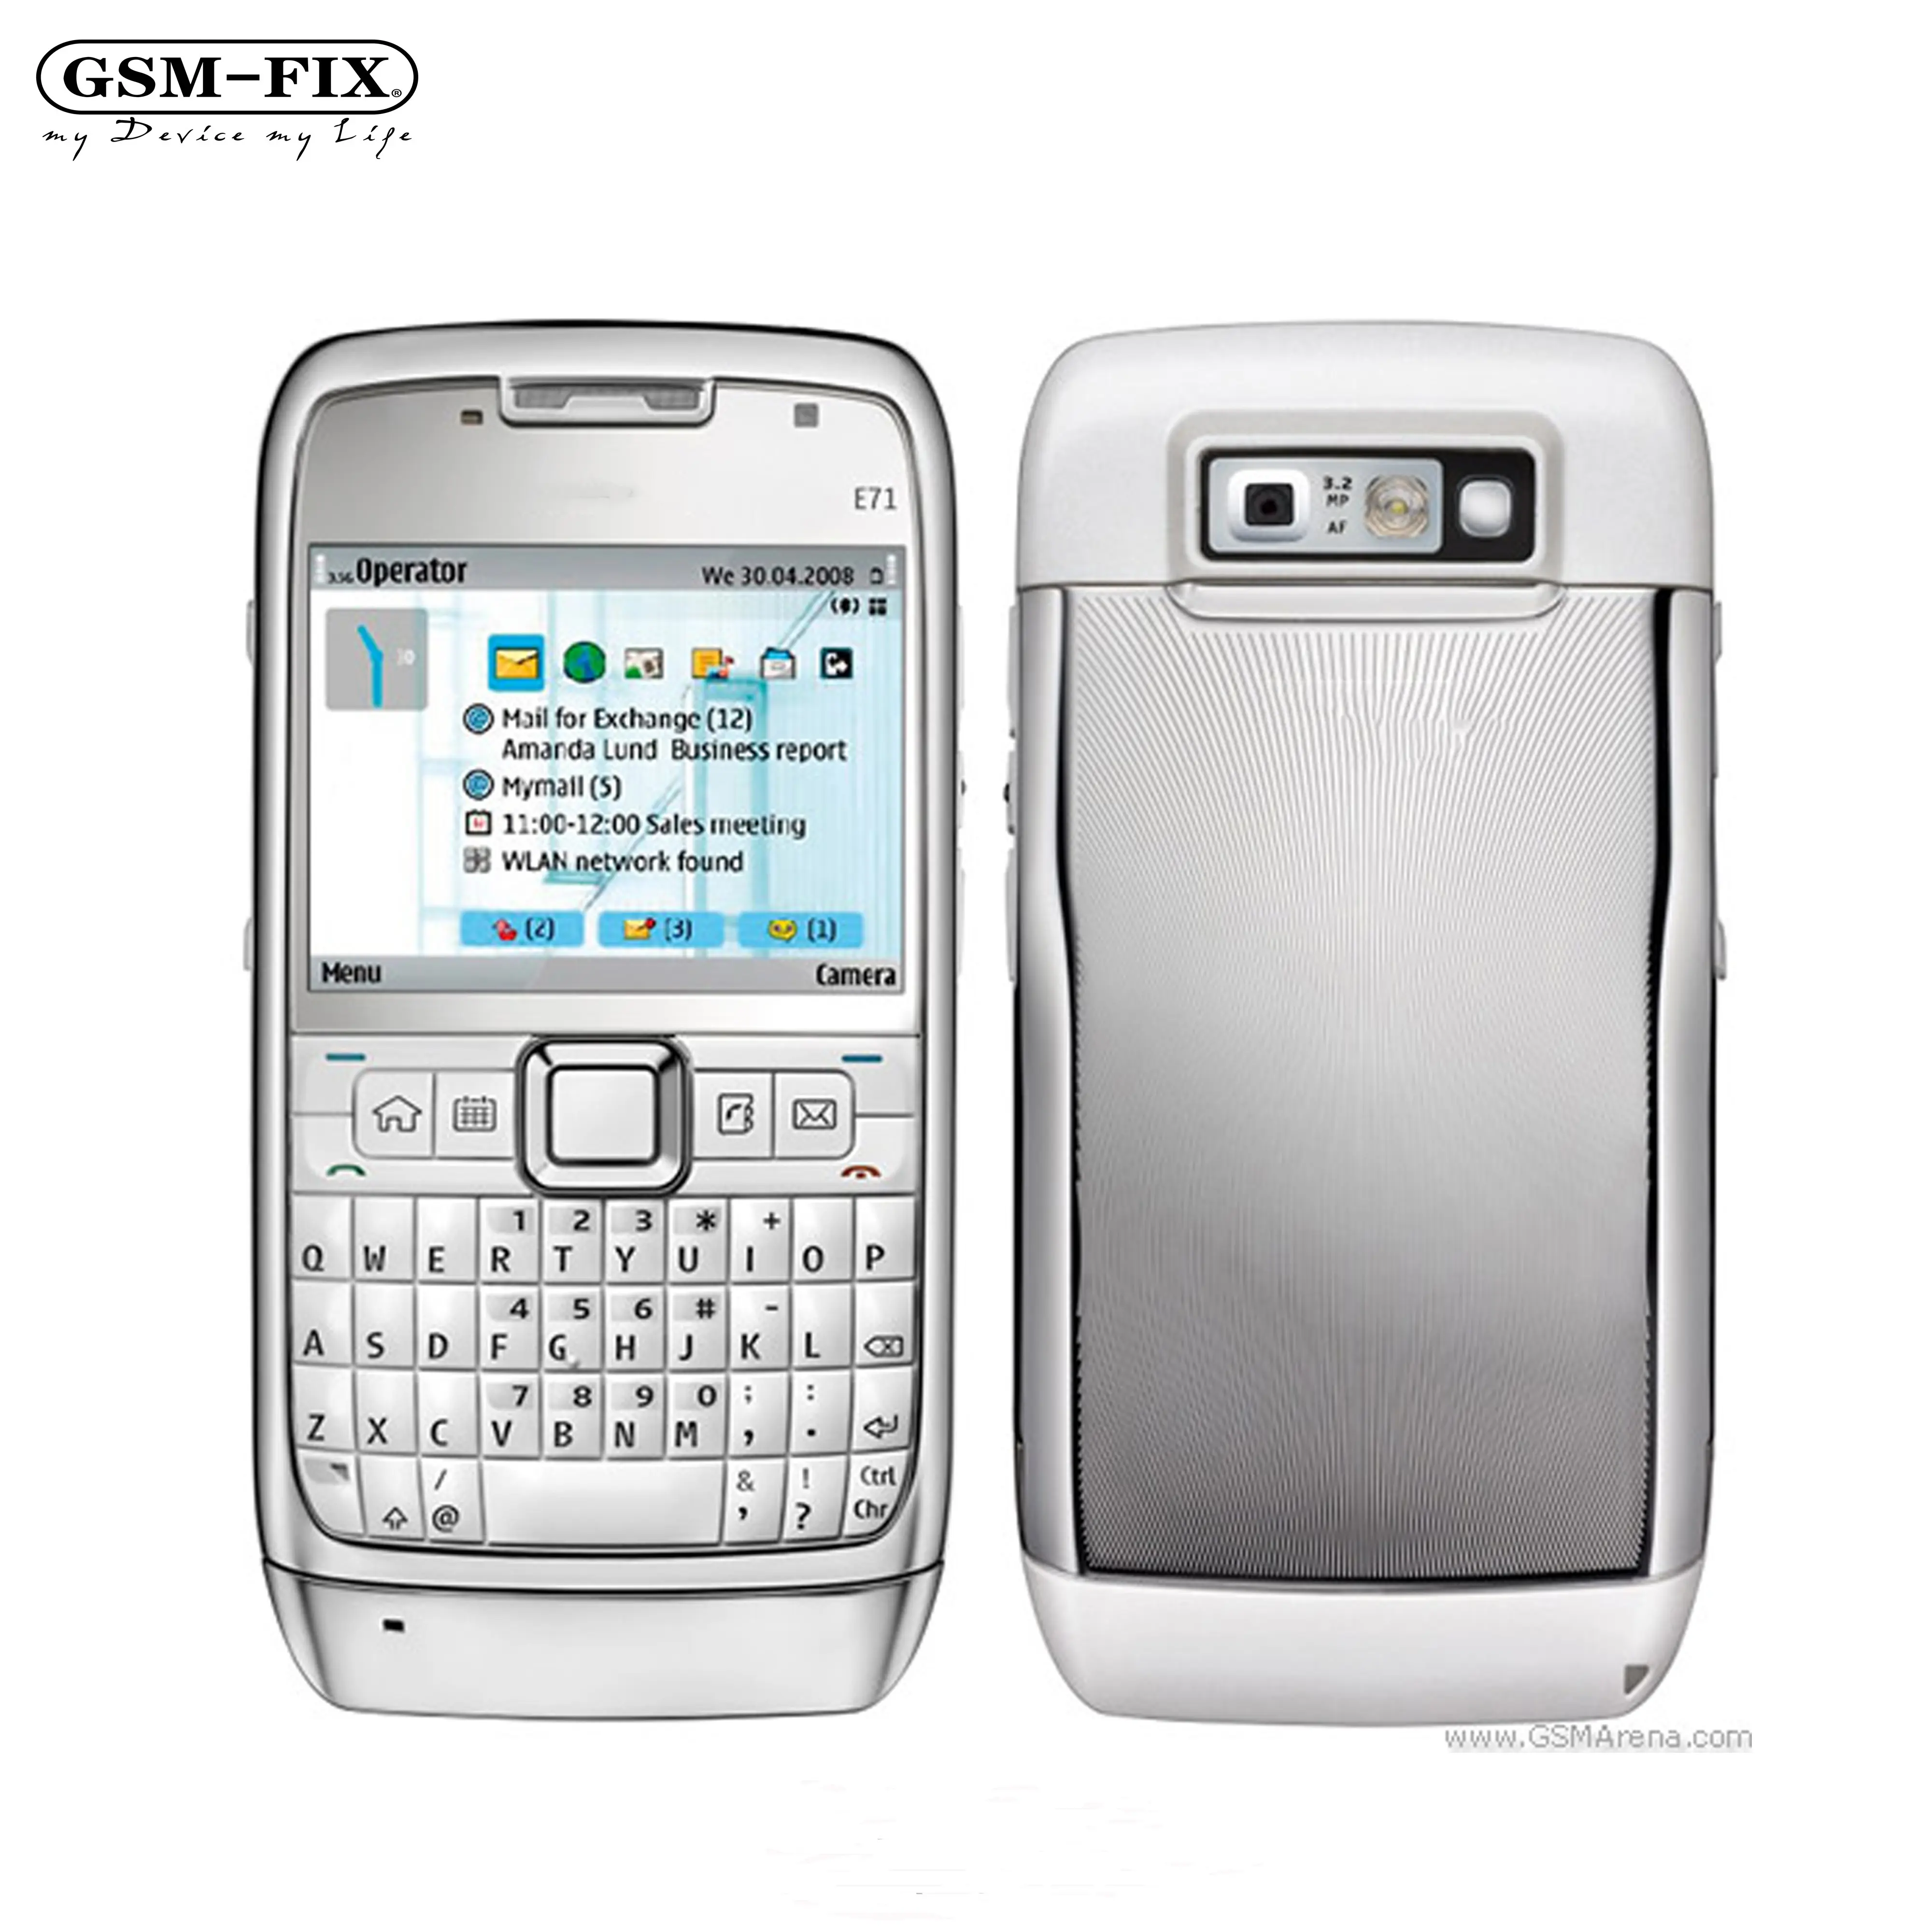 GSM-FIX الأصلي E71 لنوكيا الهاتف المحمول 3.2MP 3G مقفلة لنوكيا E71 لوحة مفاتيح كويرتي هاتف محمول ميزة الهاتف